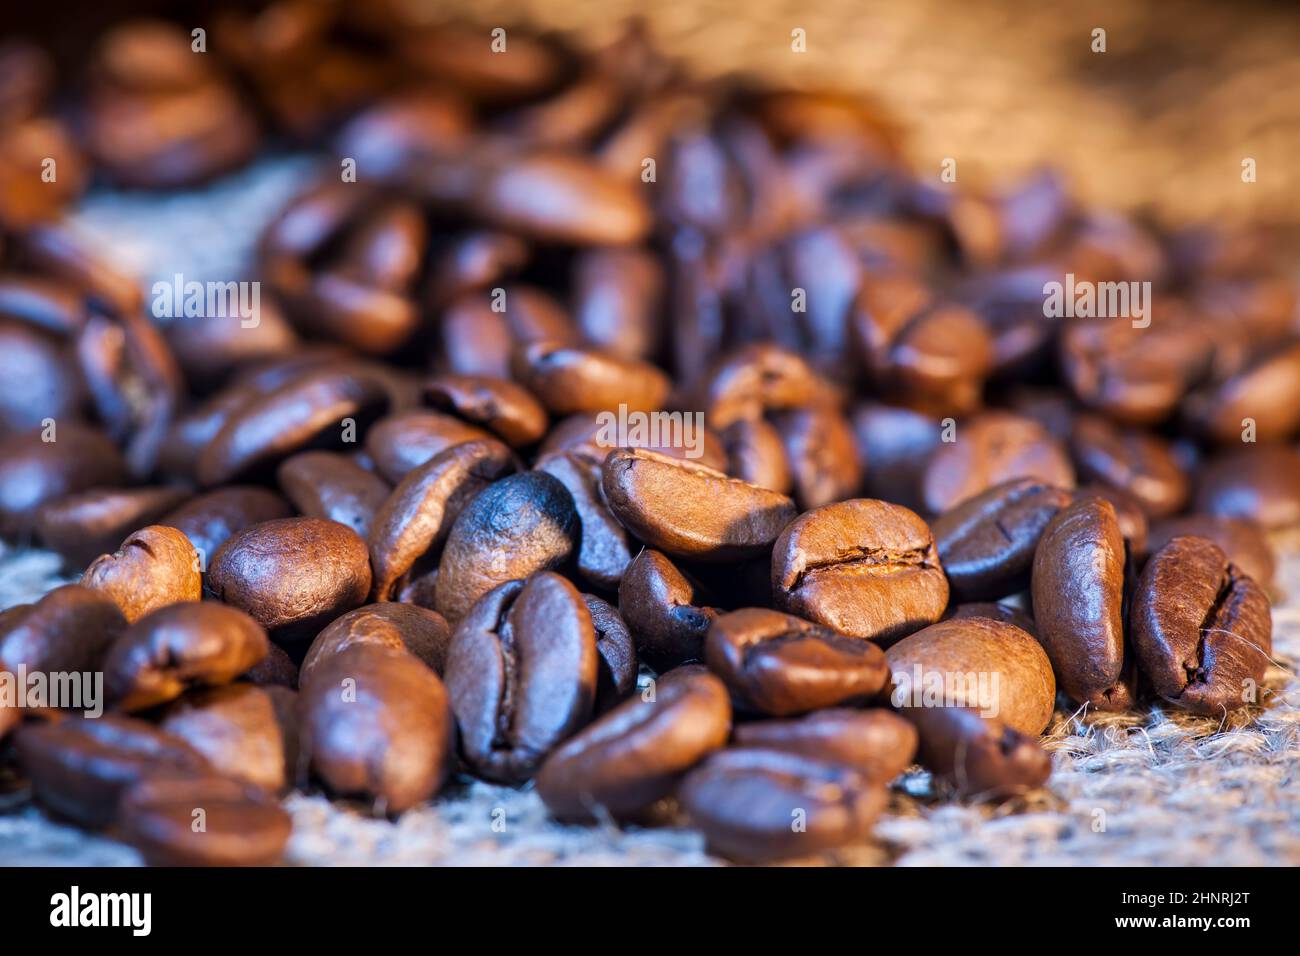 Gros plan de grains de café fraîchement torréfiés saupoudés d'un sac de jute avec une faible profondeur de champ en lumière mélangée. Banque D'Images